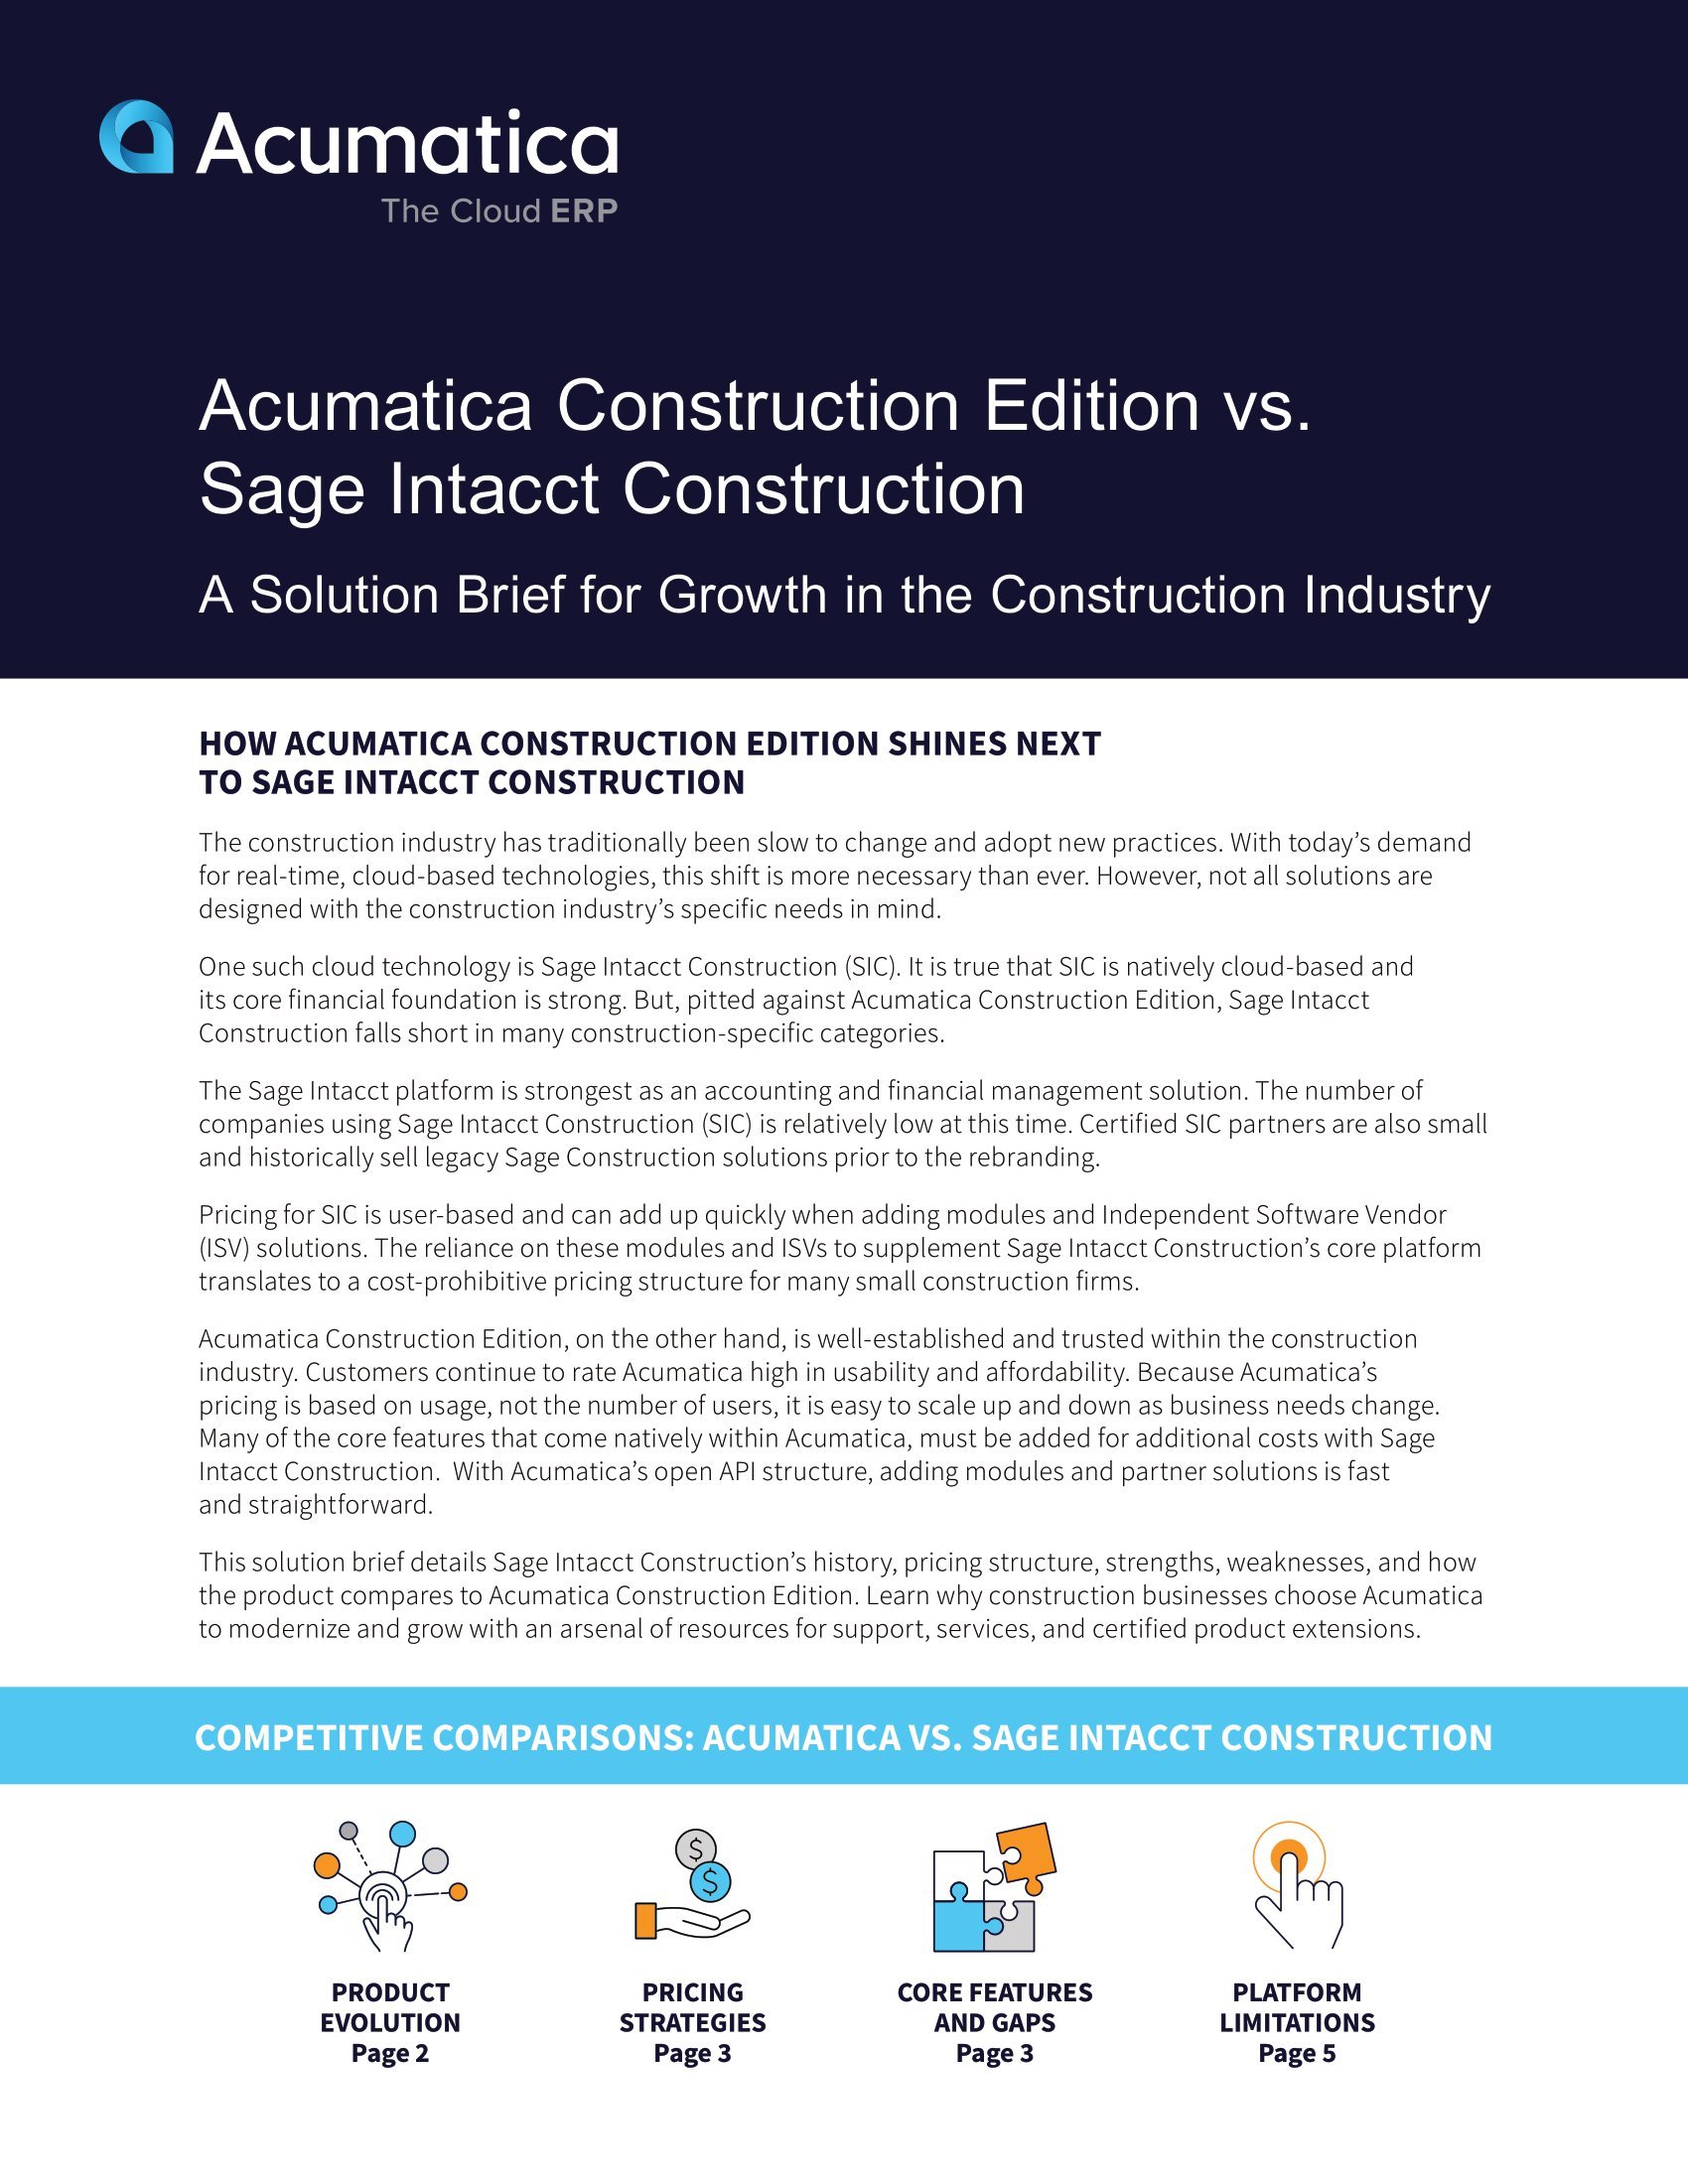 Comparaison d’Acumatica Construction Edition à Sage Intacct Construction